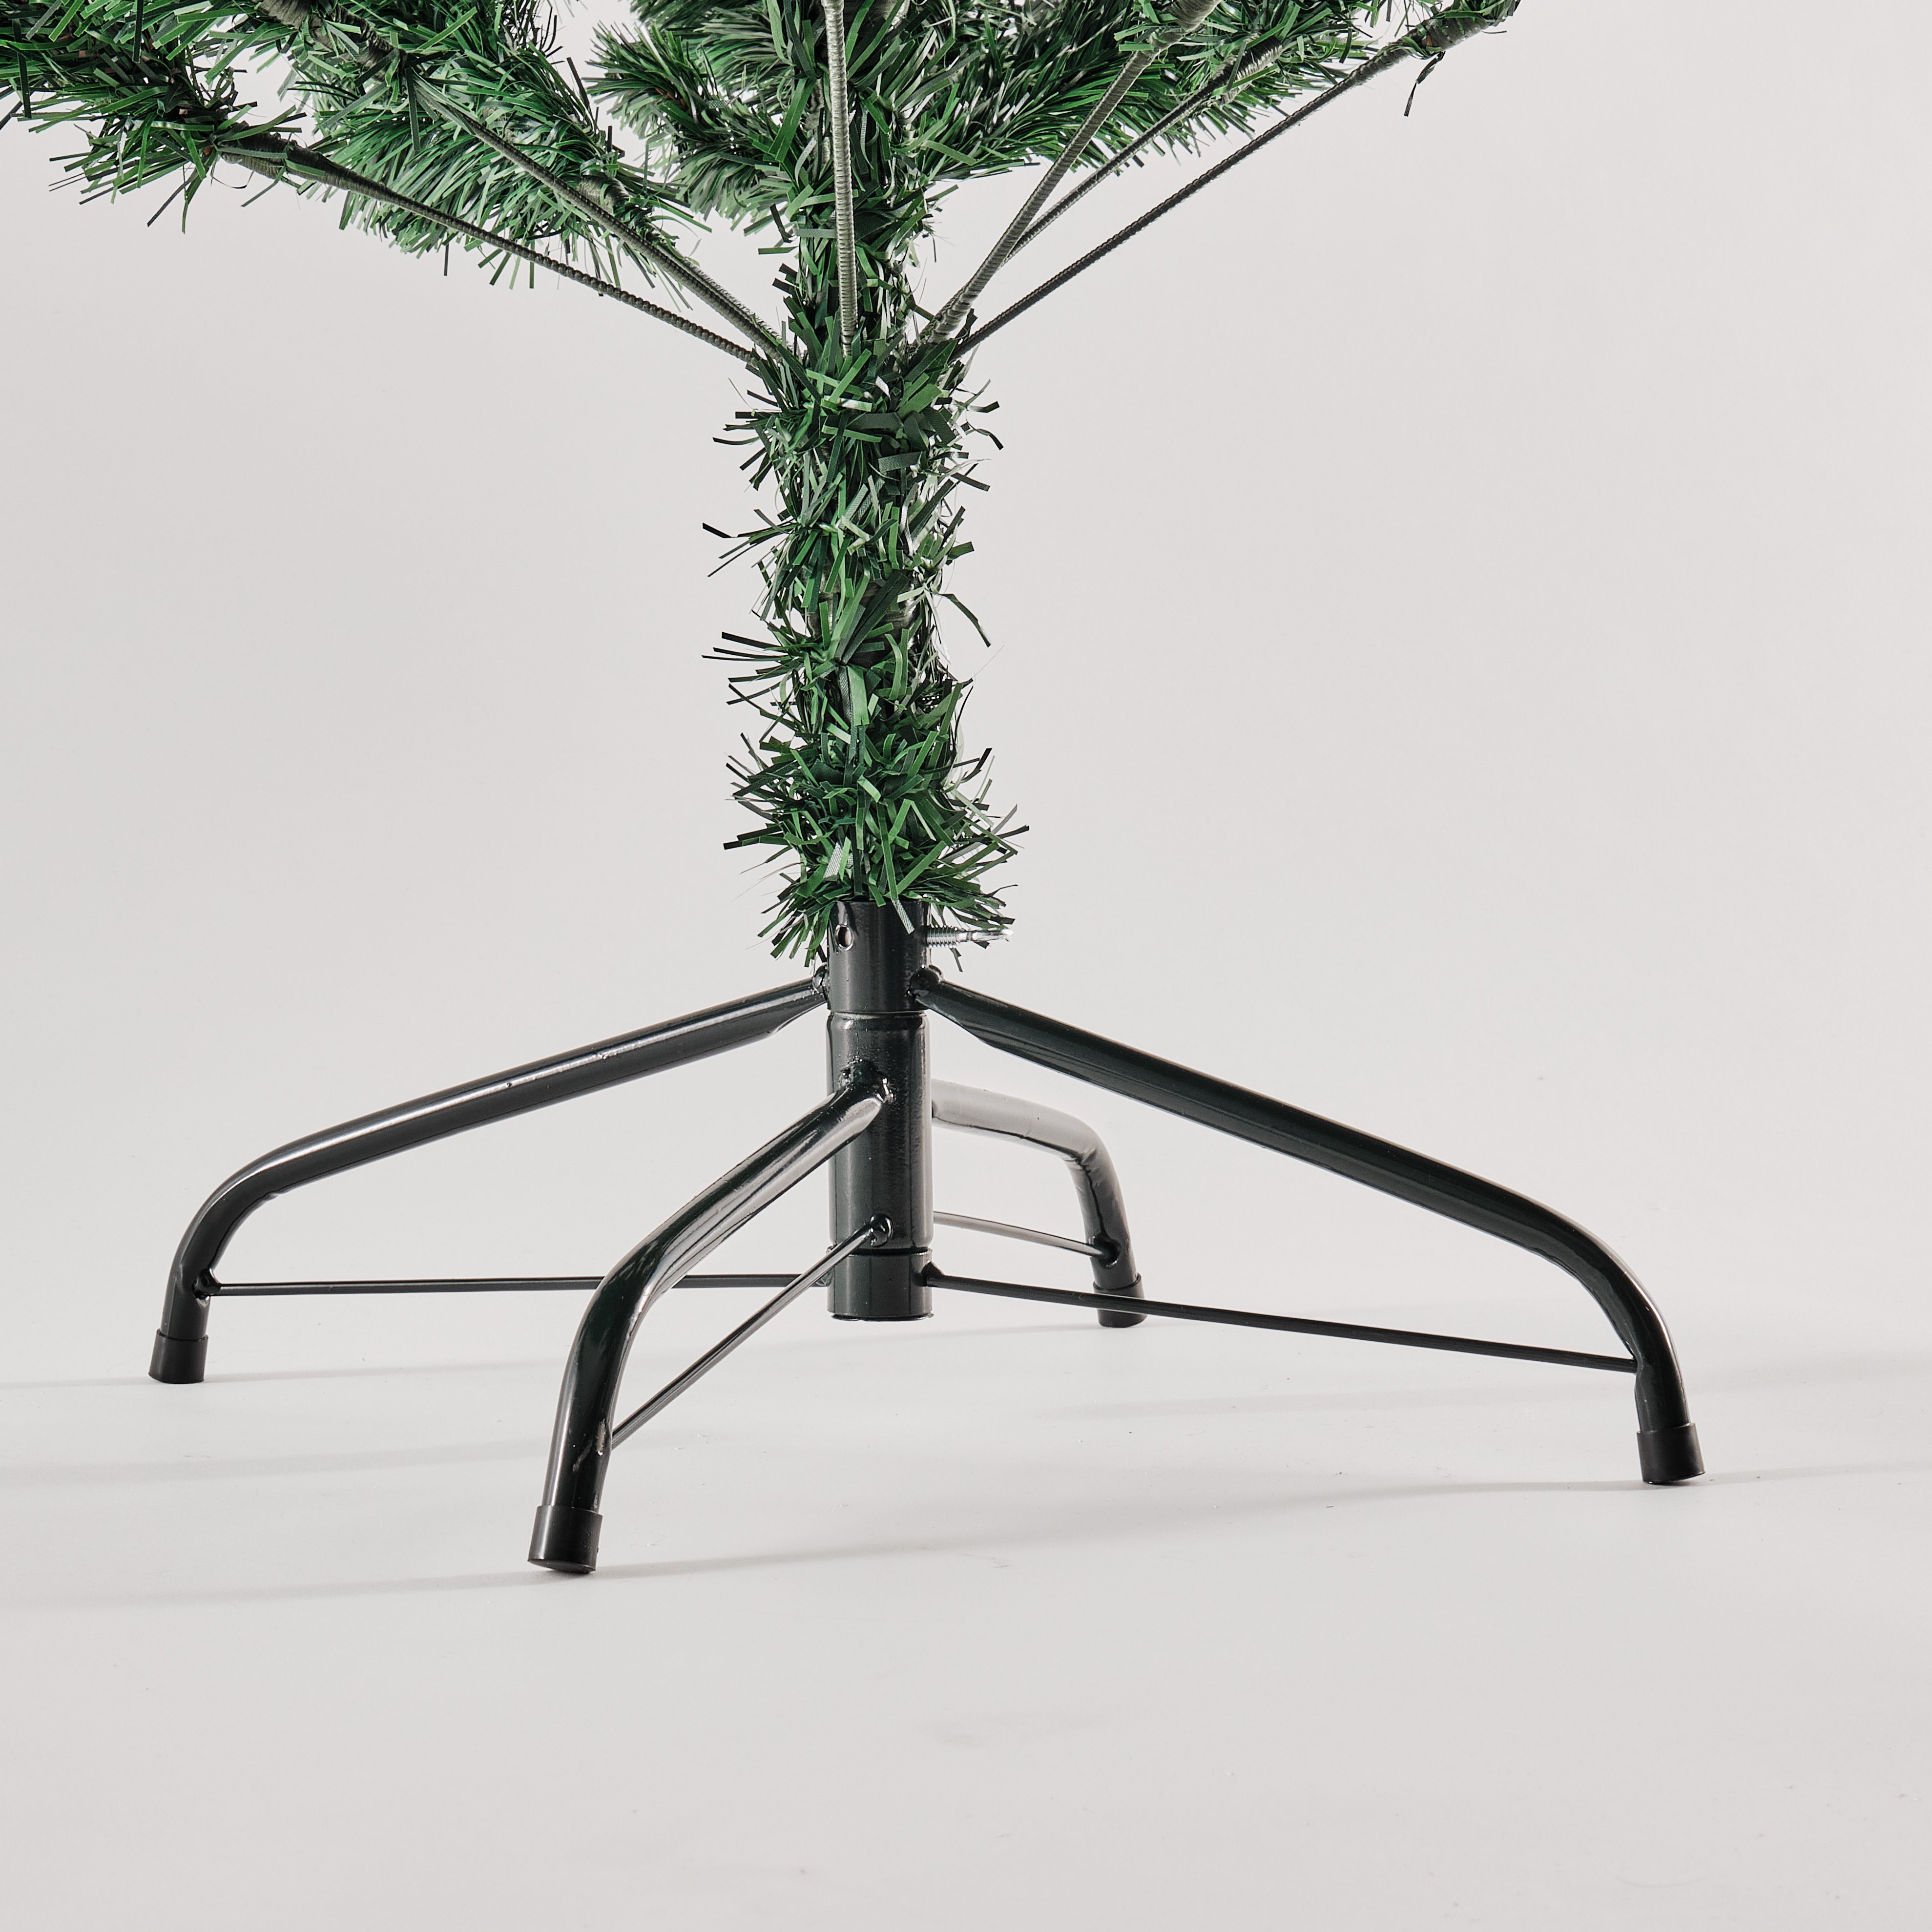 TOPCENT und Weihnachtsbaum Tannen, Weihnachtsbaum mit Zweige, H cm 1072 Künstlicher Künstlicher Künstlich, 210 Beeren